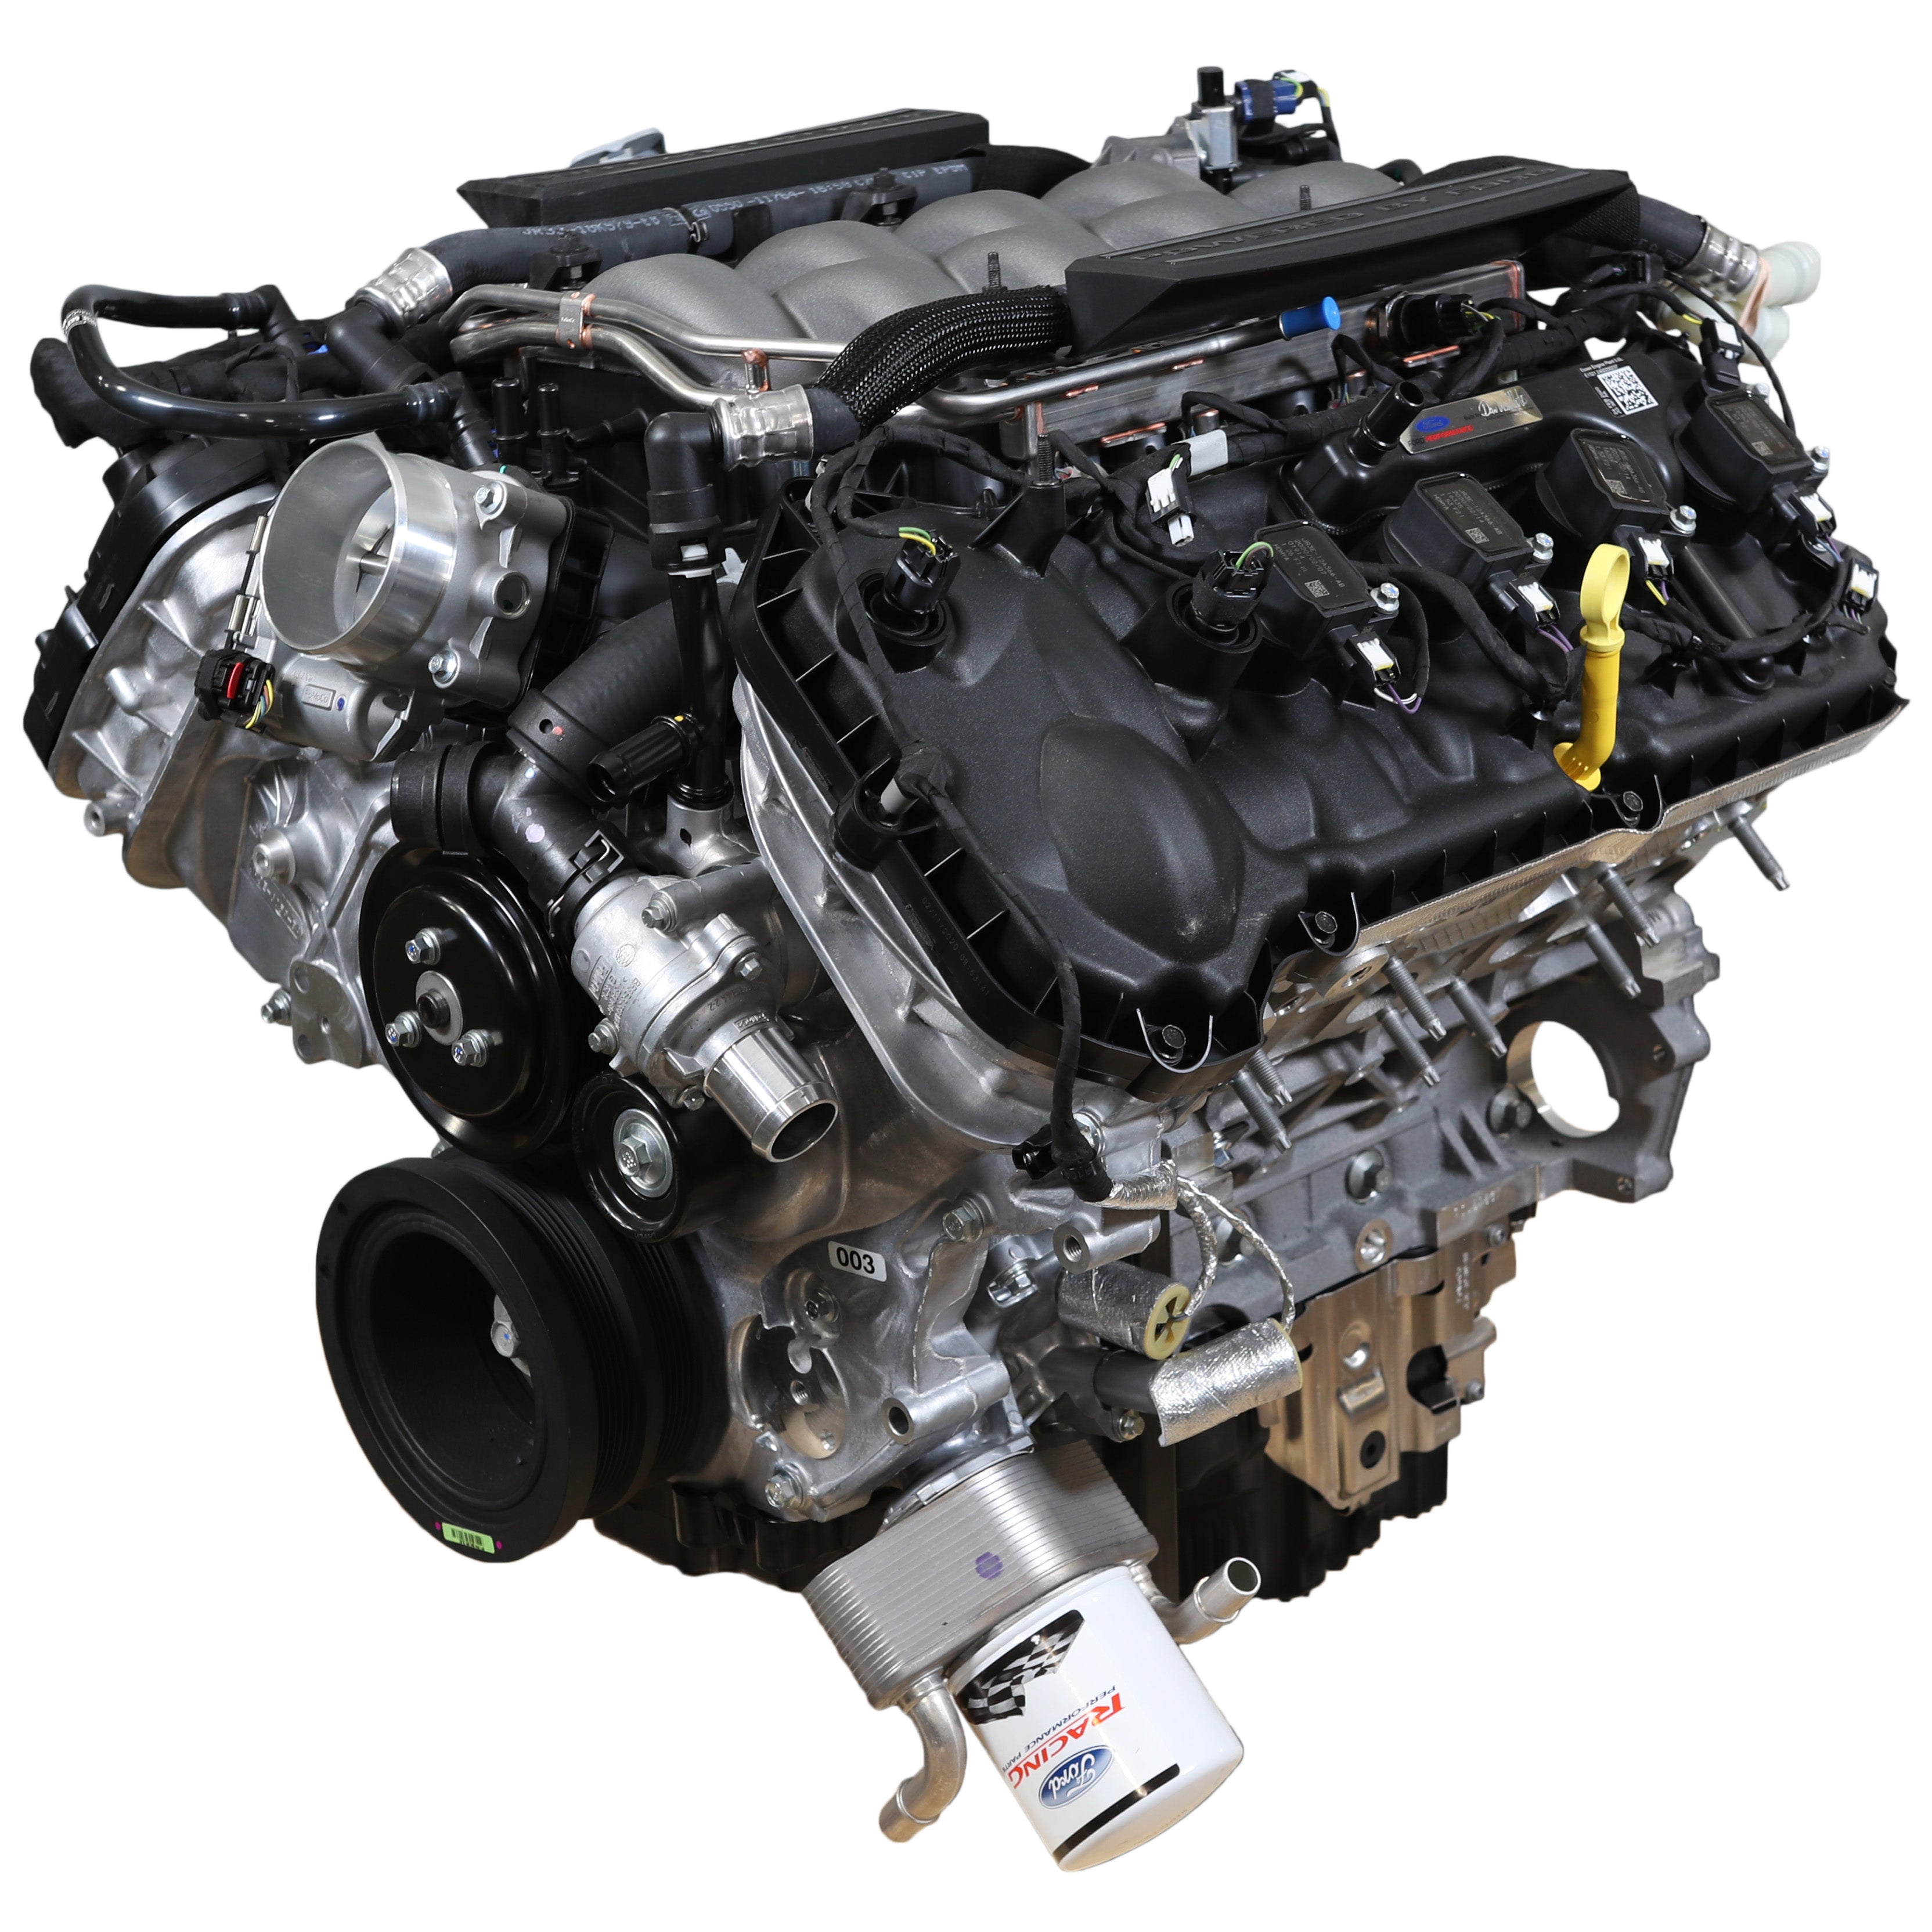 Ford Performance 5.0L „Aluminator“ Gen 3 Crate Engine – nízká komprese pro FI sestavy